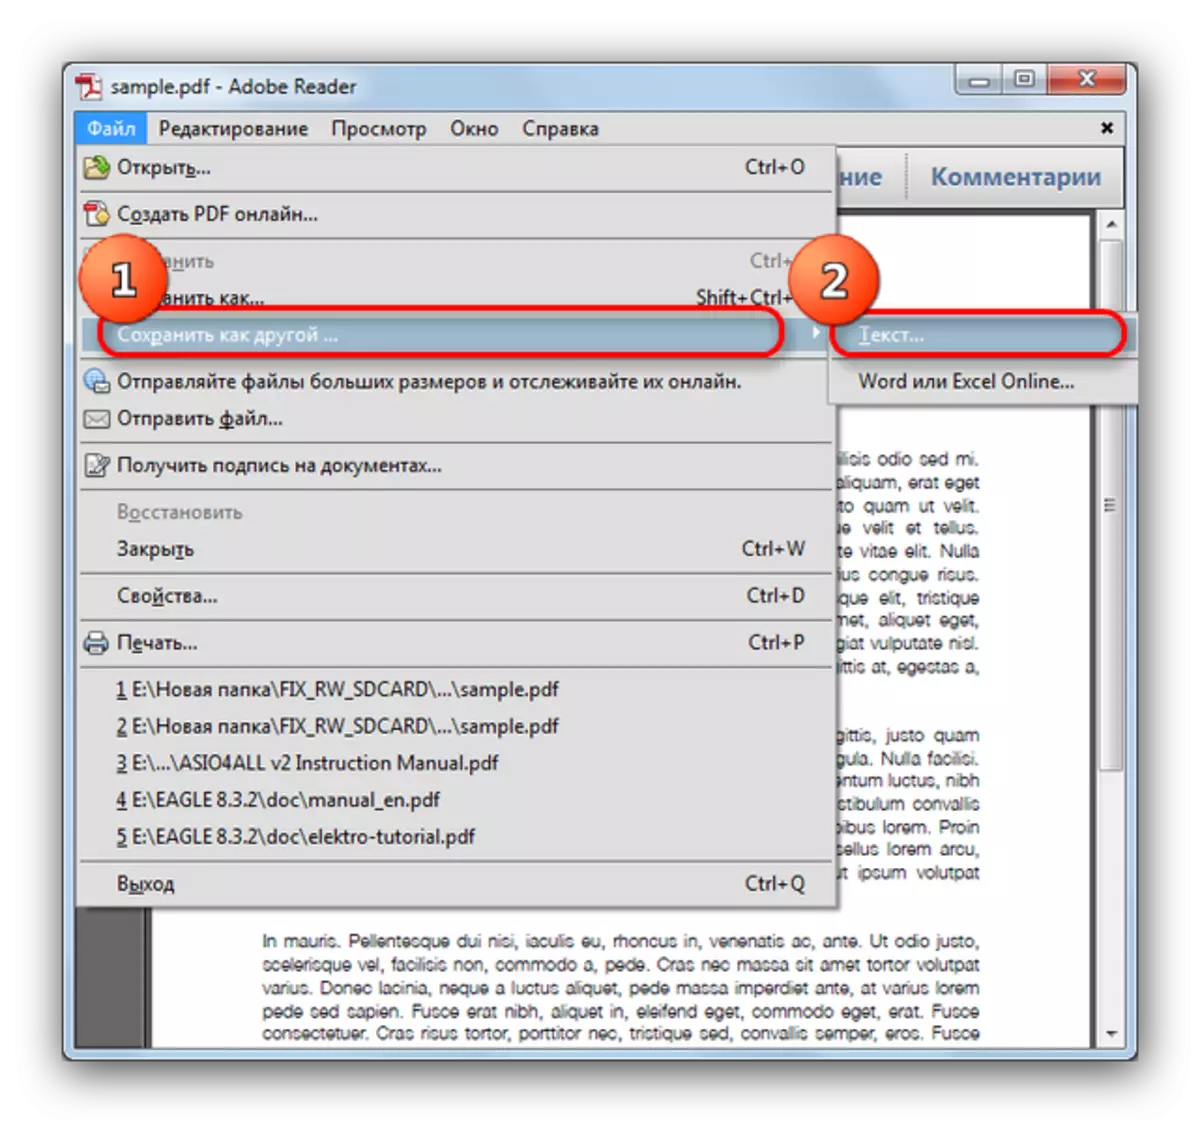 Adobe Reader मध्ये एक मजकूर फाइल जतन करणे मजकूर निवडा